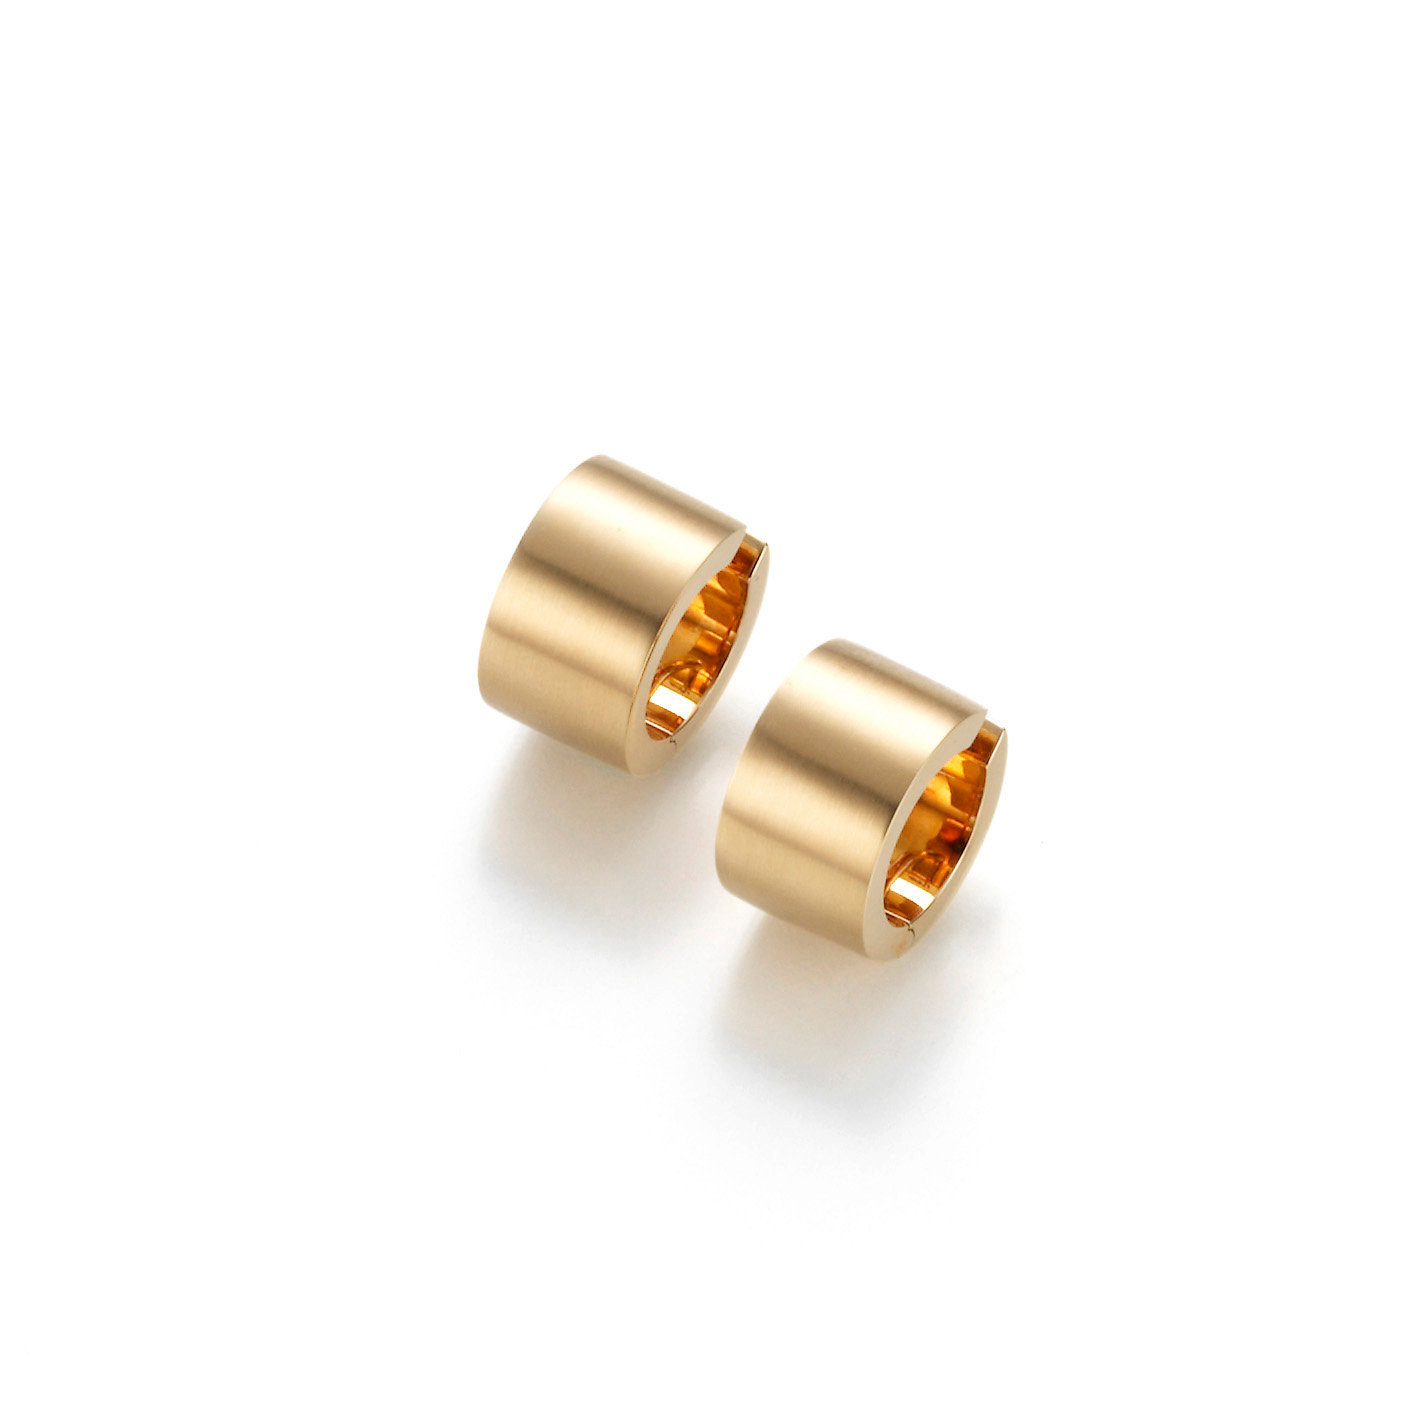 Wholesale Design gold OEM/ODM Jewelry earrings custom girls sterling silver jewelry supplier